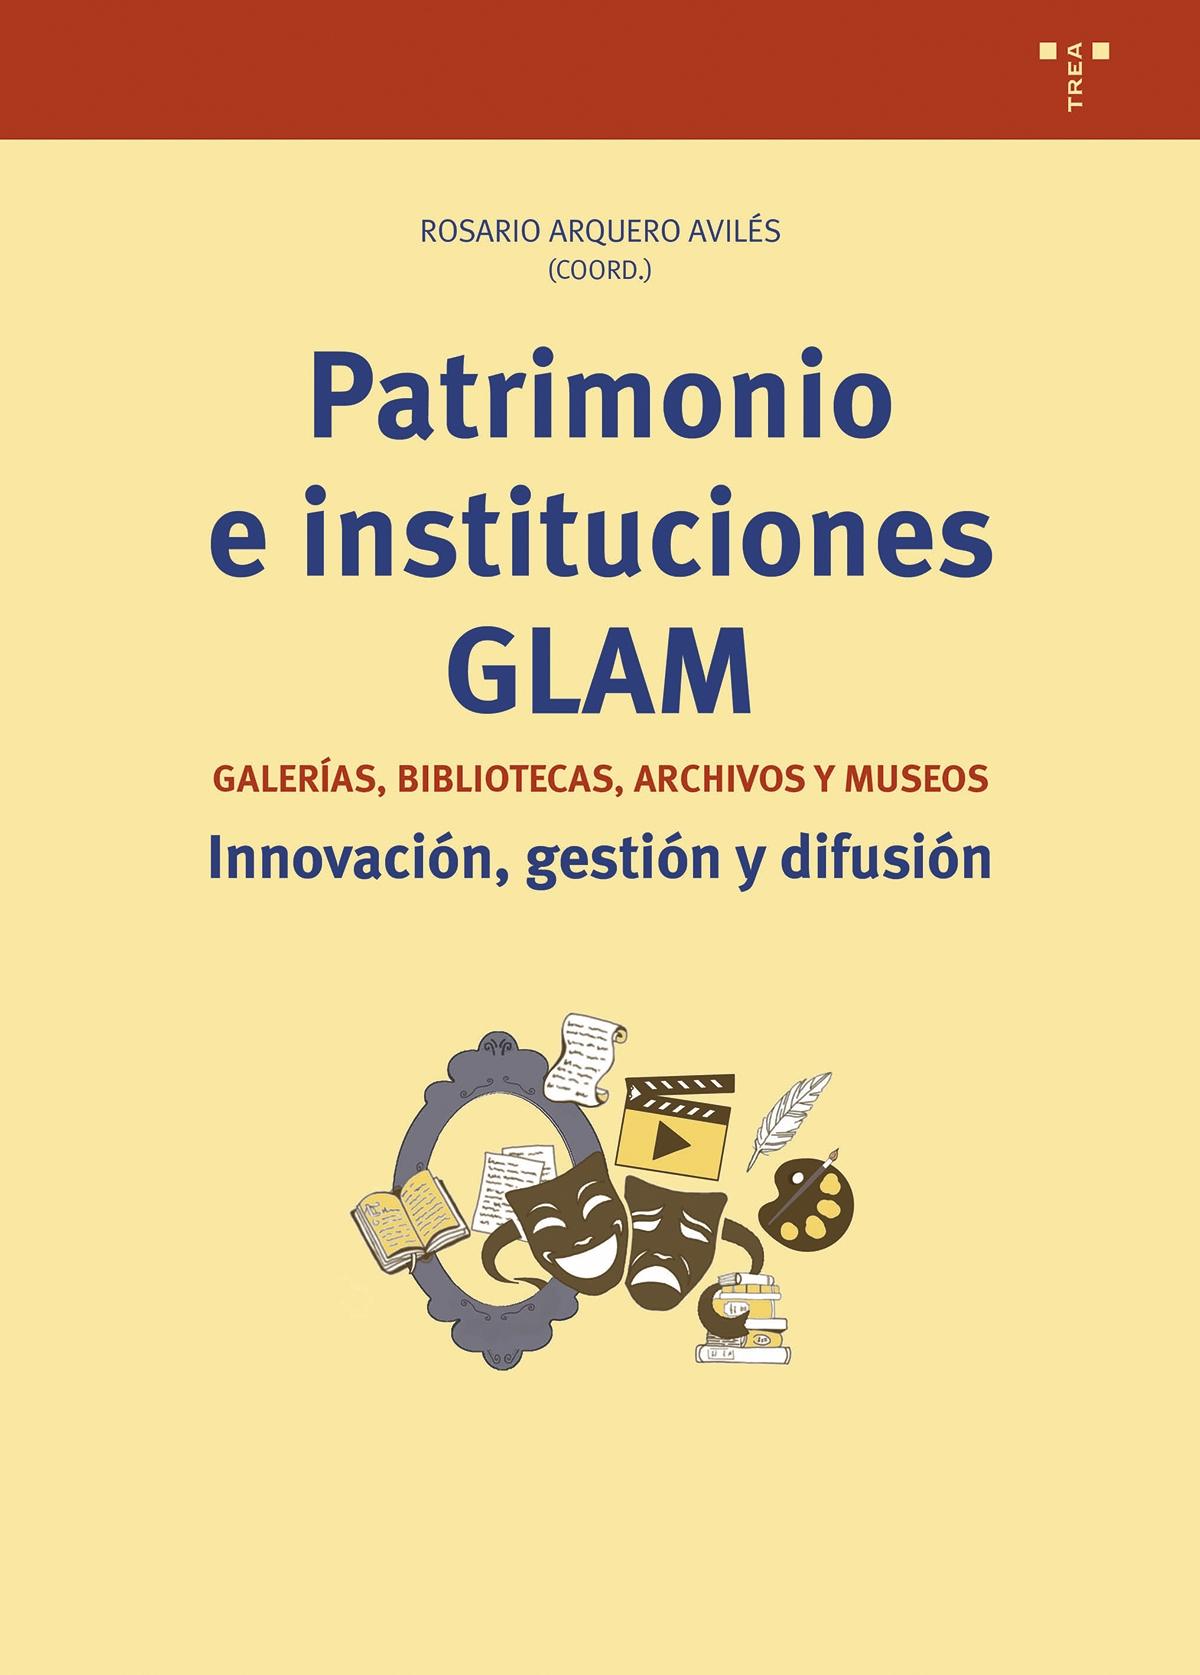 PATRIMONIO E INSTITUCIONES GLAM "Galerías, bibliotecas, archivos y museos. Innovación, gestión y difusión"